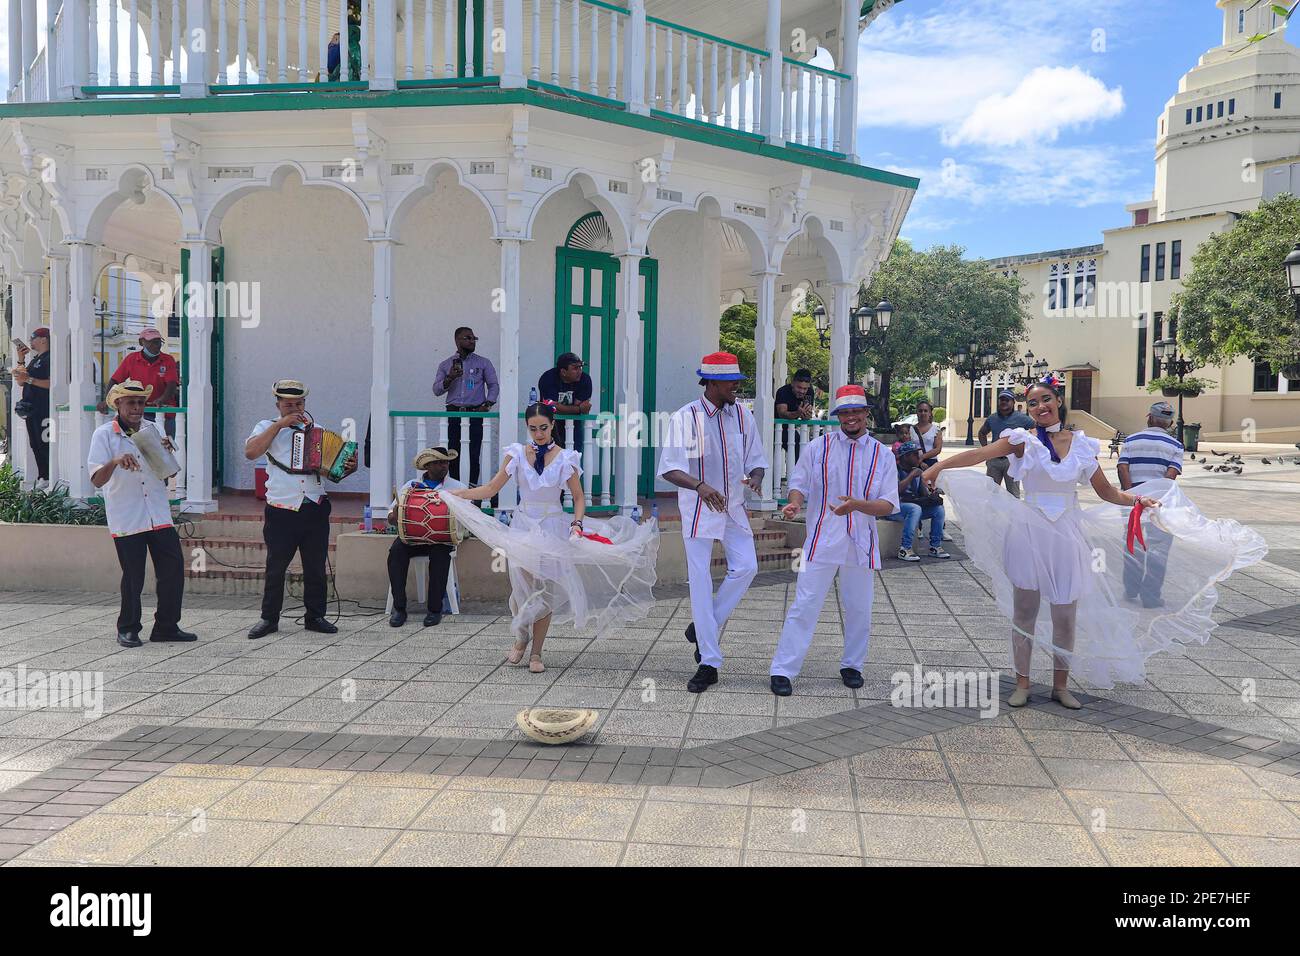 Groupe de danse local avec musicien pour les touristes, dans le Parque Independenzia dans le Centro Historico, la vieille ville de Puerto Plata, République Dominicaine Banque D'Images